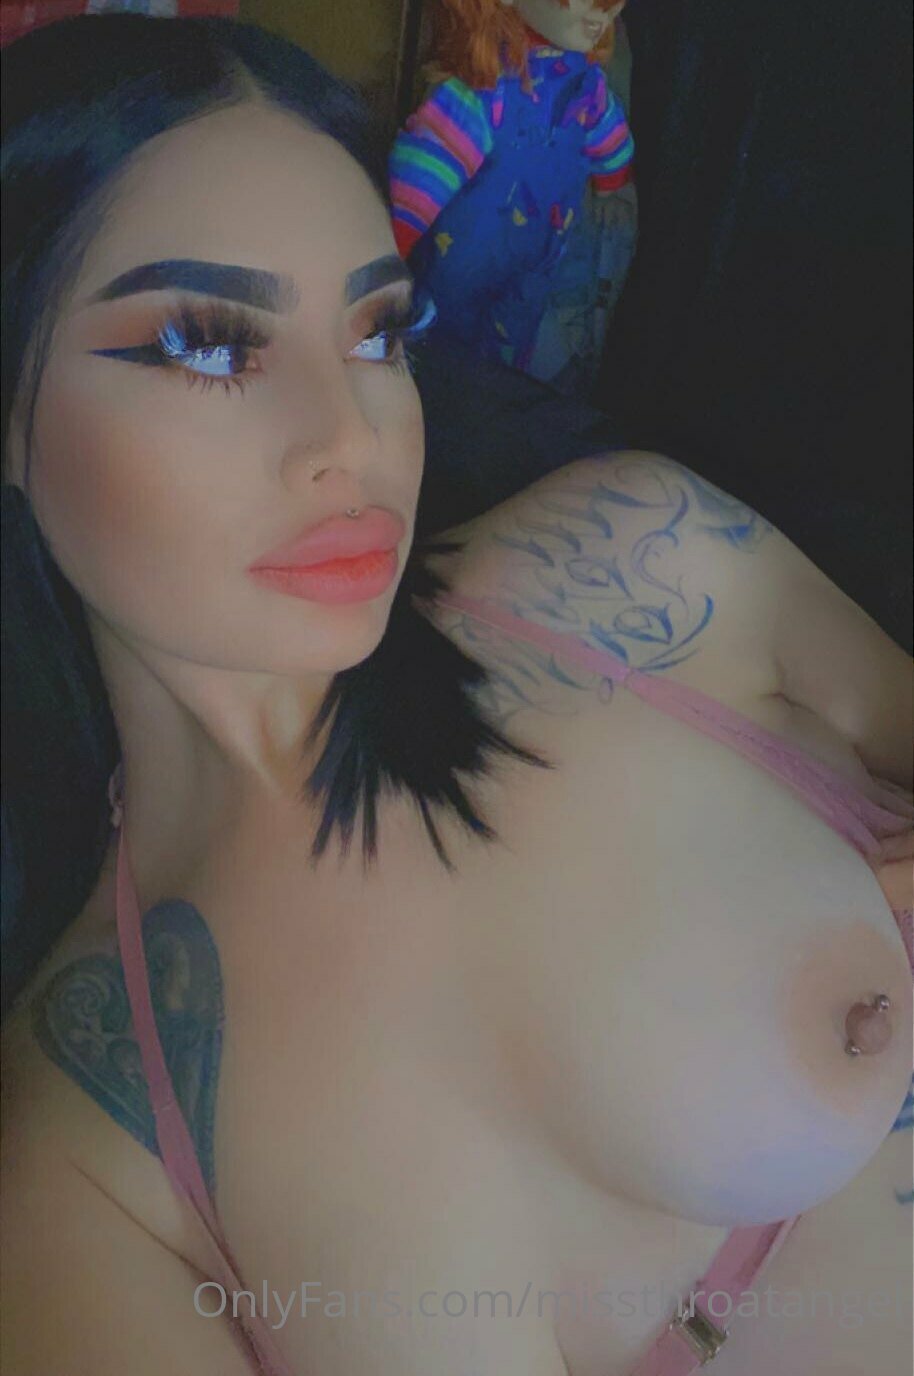 Sexy Latina Sucking Dick - Porn Videos & Photos - EroMe